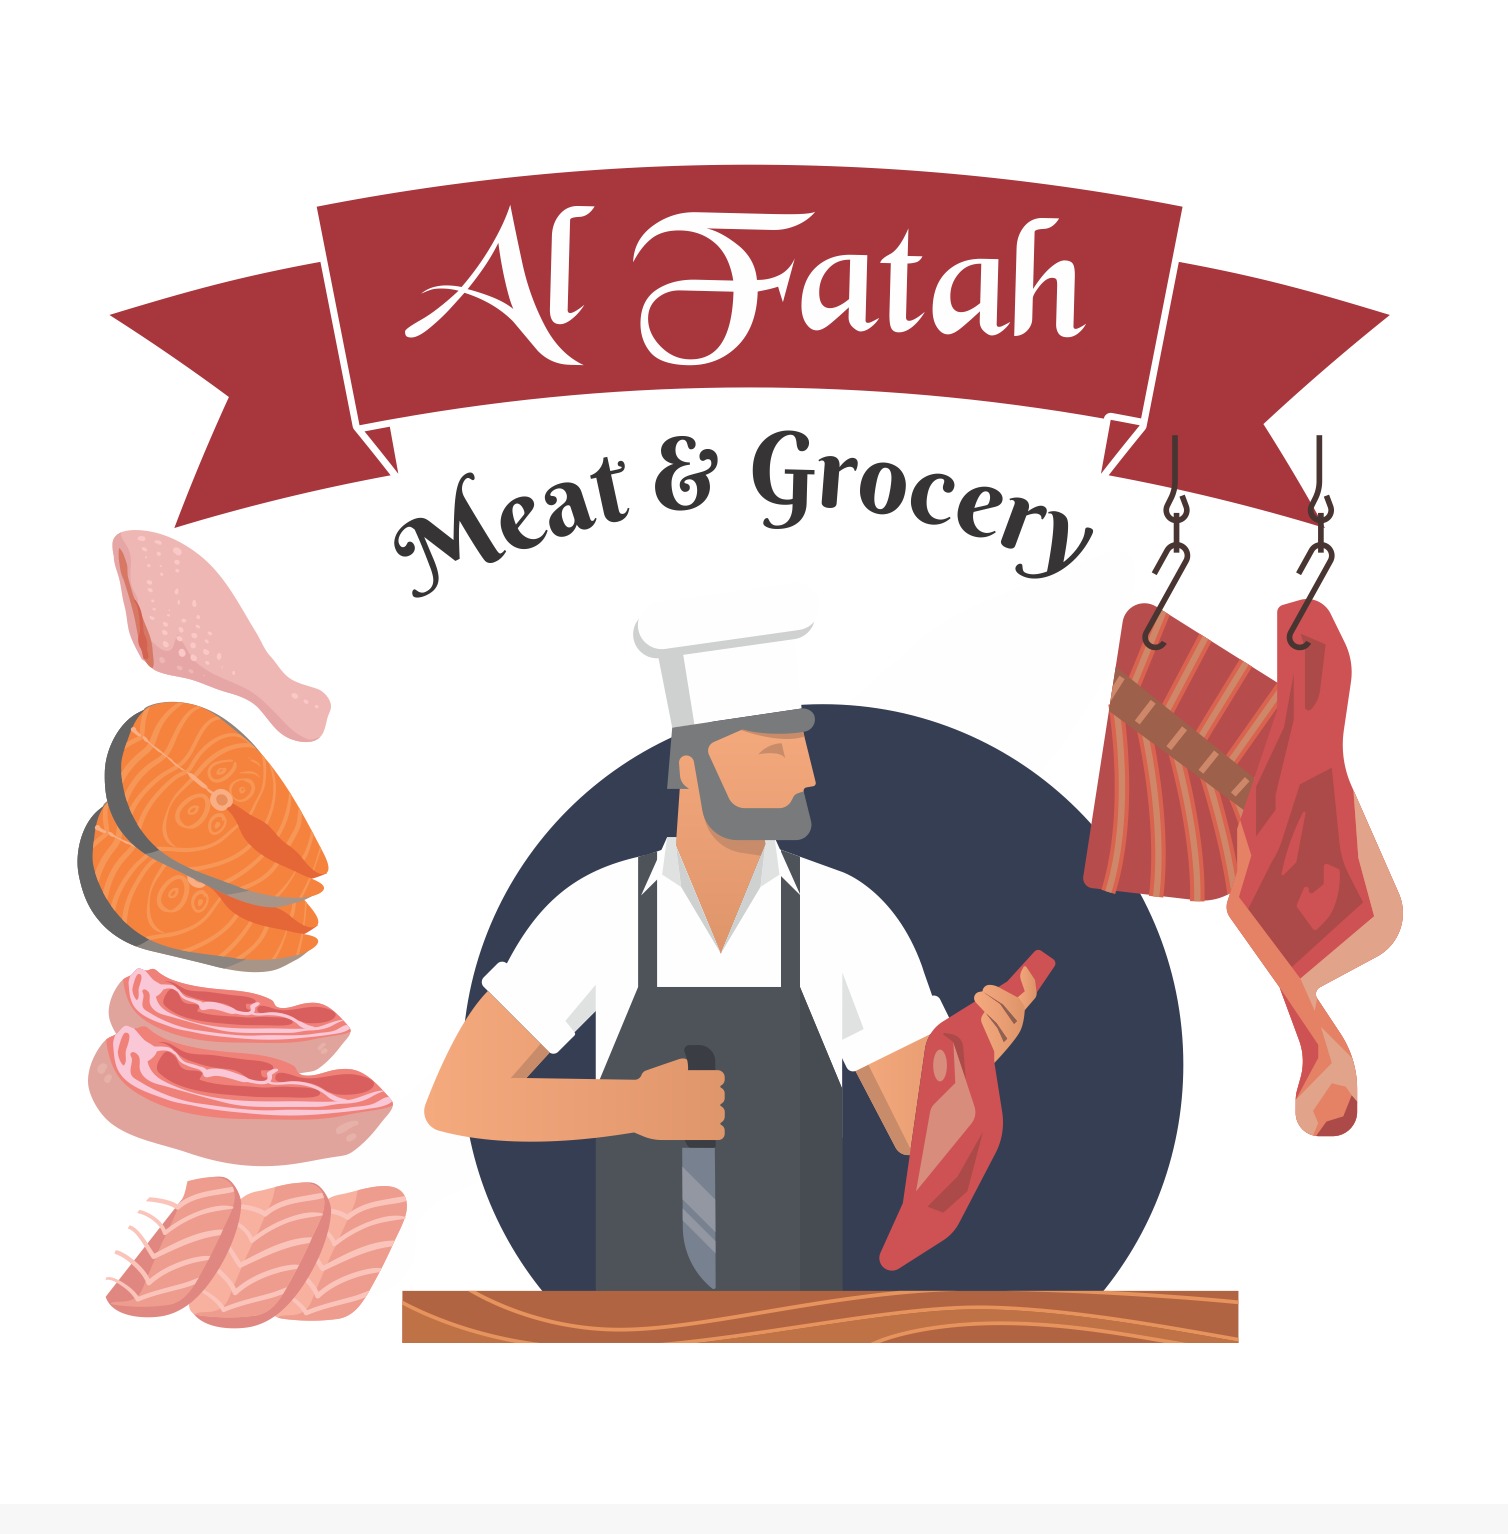 Al Fatah Meat & Grocery